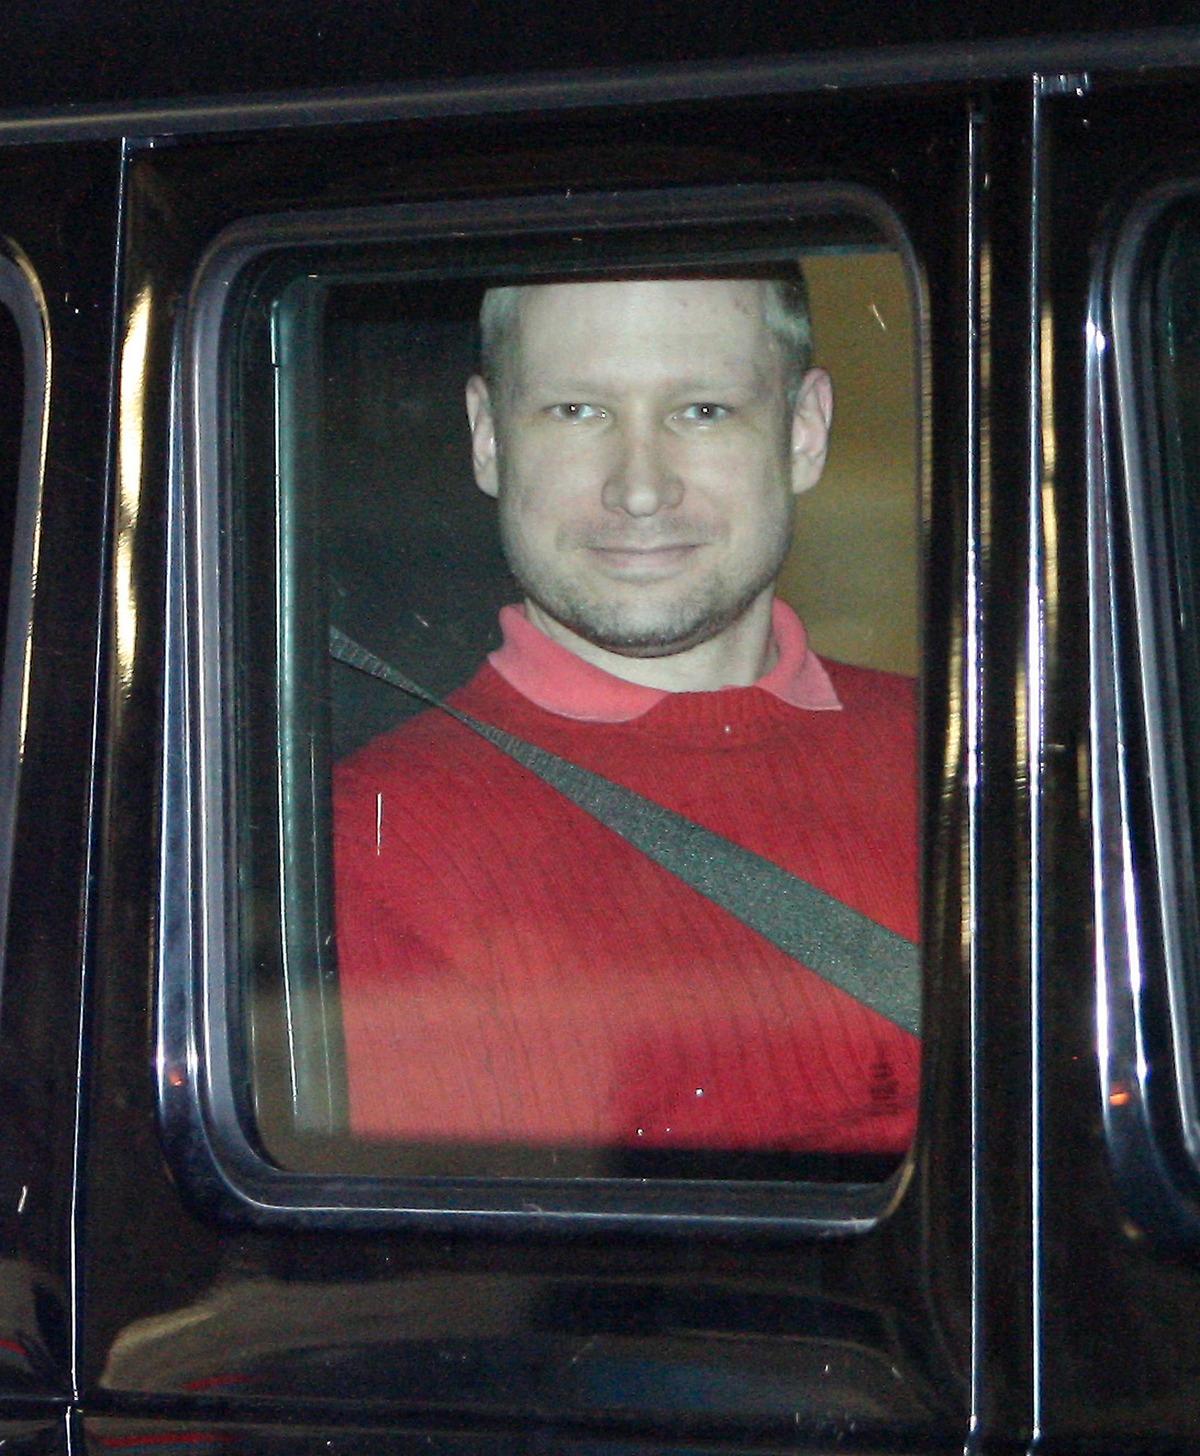 PSYKOPAT  Enligt experterna har Anders Behring Breivik tydliga psykopatiska drag. ”På en skala från 1 till 100 ligger han kanske på 4. Jag tror aldrig att jag stött på en sådan individ under hela mitt yrkesliv”, säger Ulf Åsgård, psykiater.